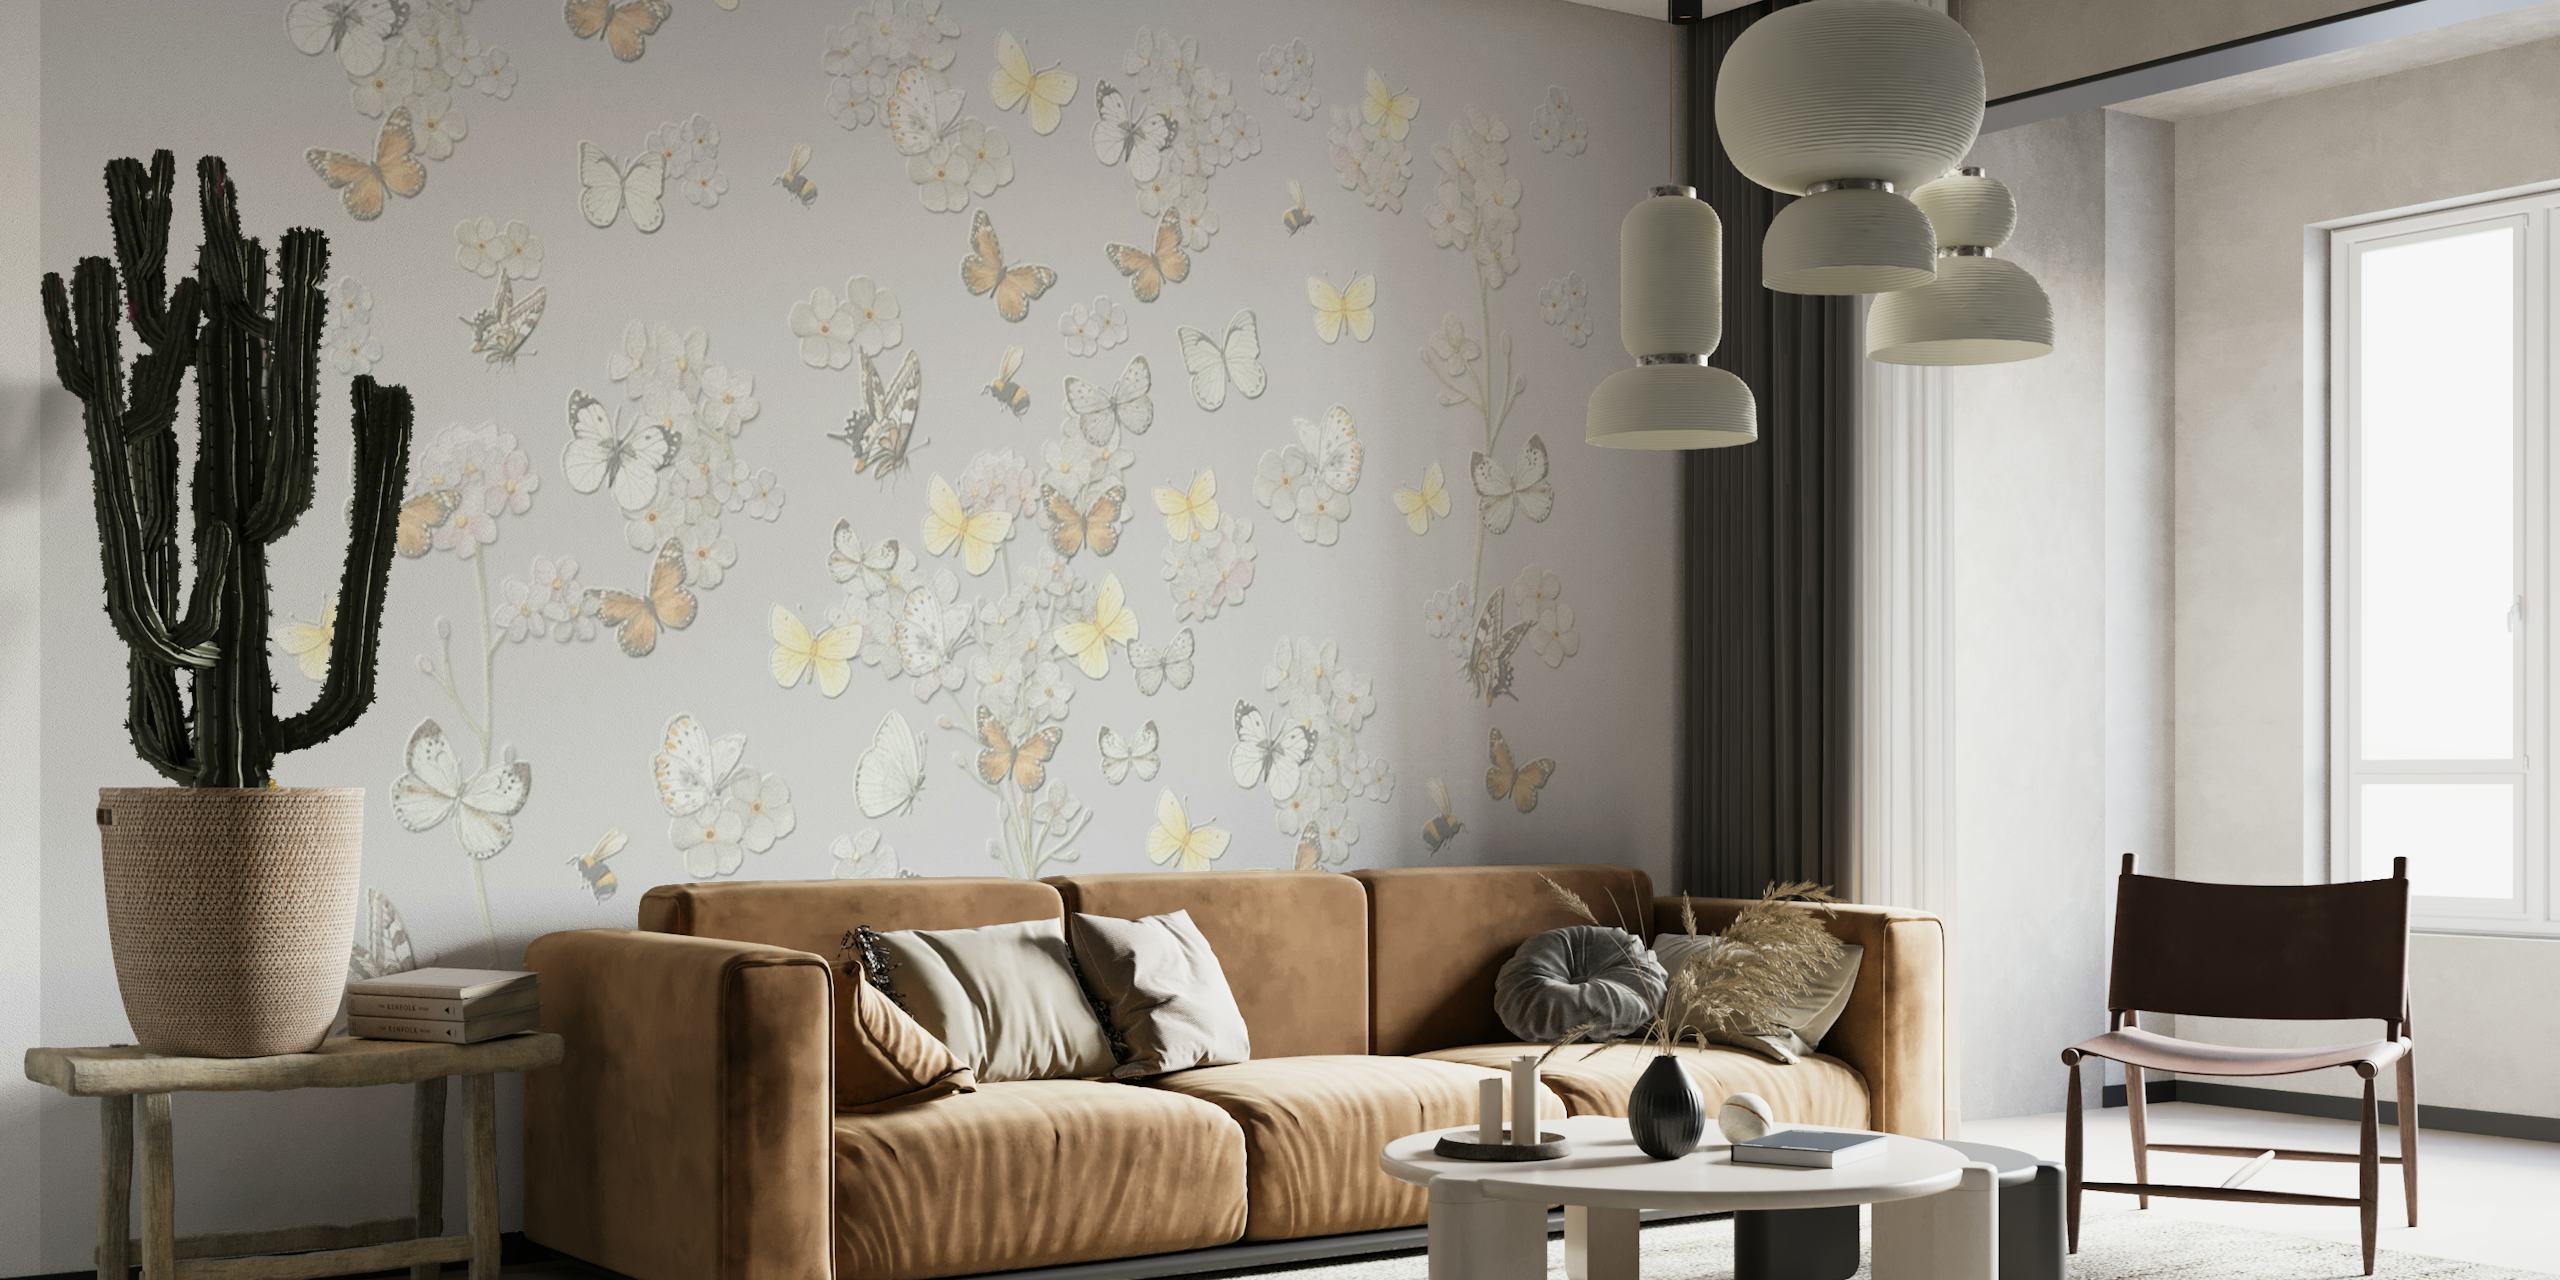 Butterfly Garden by MS wallpaper